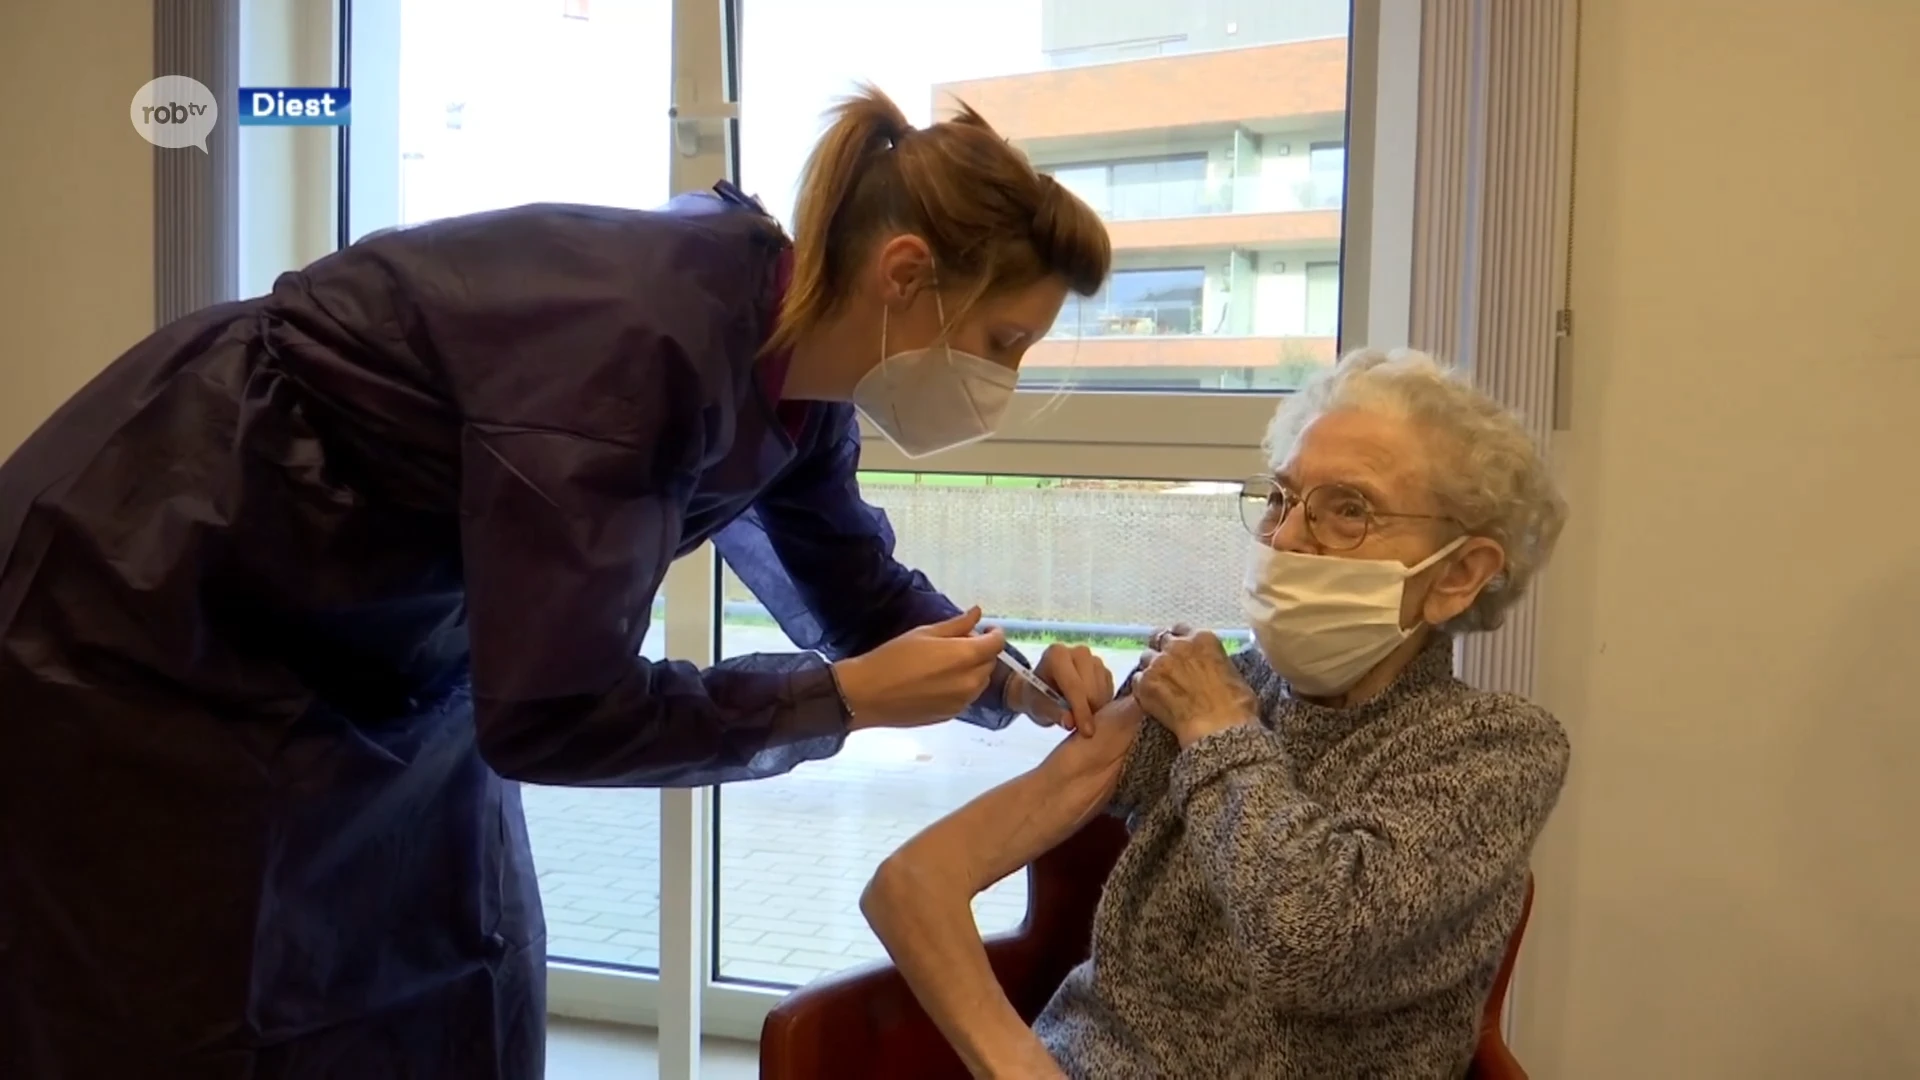 101-jarigen krijgen vaccin in Diest: "Ik ben blij, het is een zekerheid"